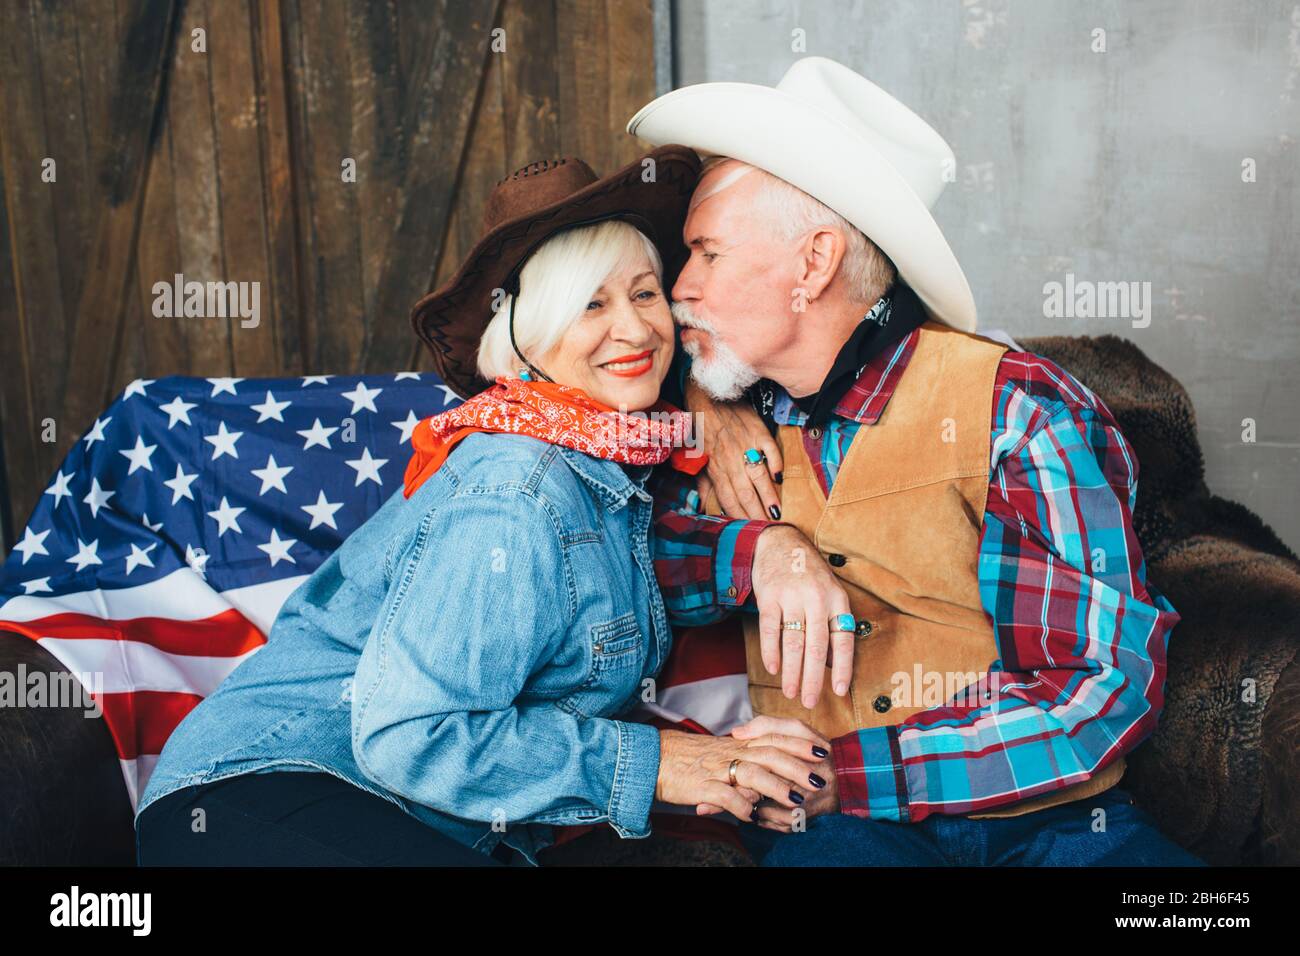 coppia anziana, vestita con cappelli da cowboy, sorridente, prendendo le mani l'un l'altro. Dietro, sul divano si trova la bandiera americana, la celebrazione dell'America Foto Stock